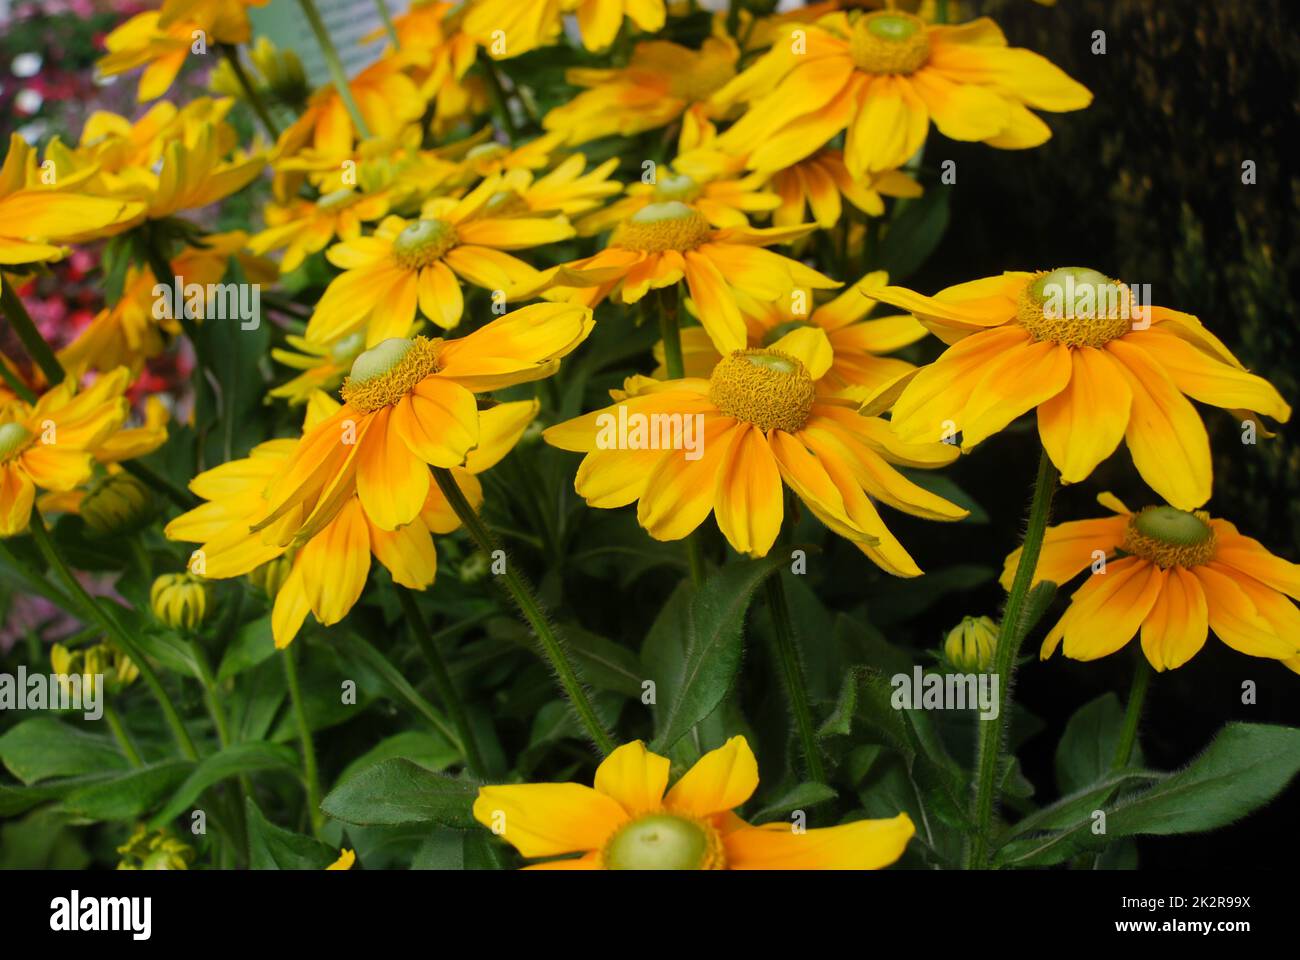 Susans aux yeux jaunes noirs, Rudbeckia hirta, fleurit dans un jardin d'été Banque D'Images